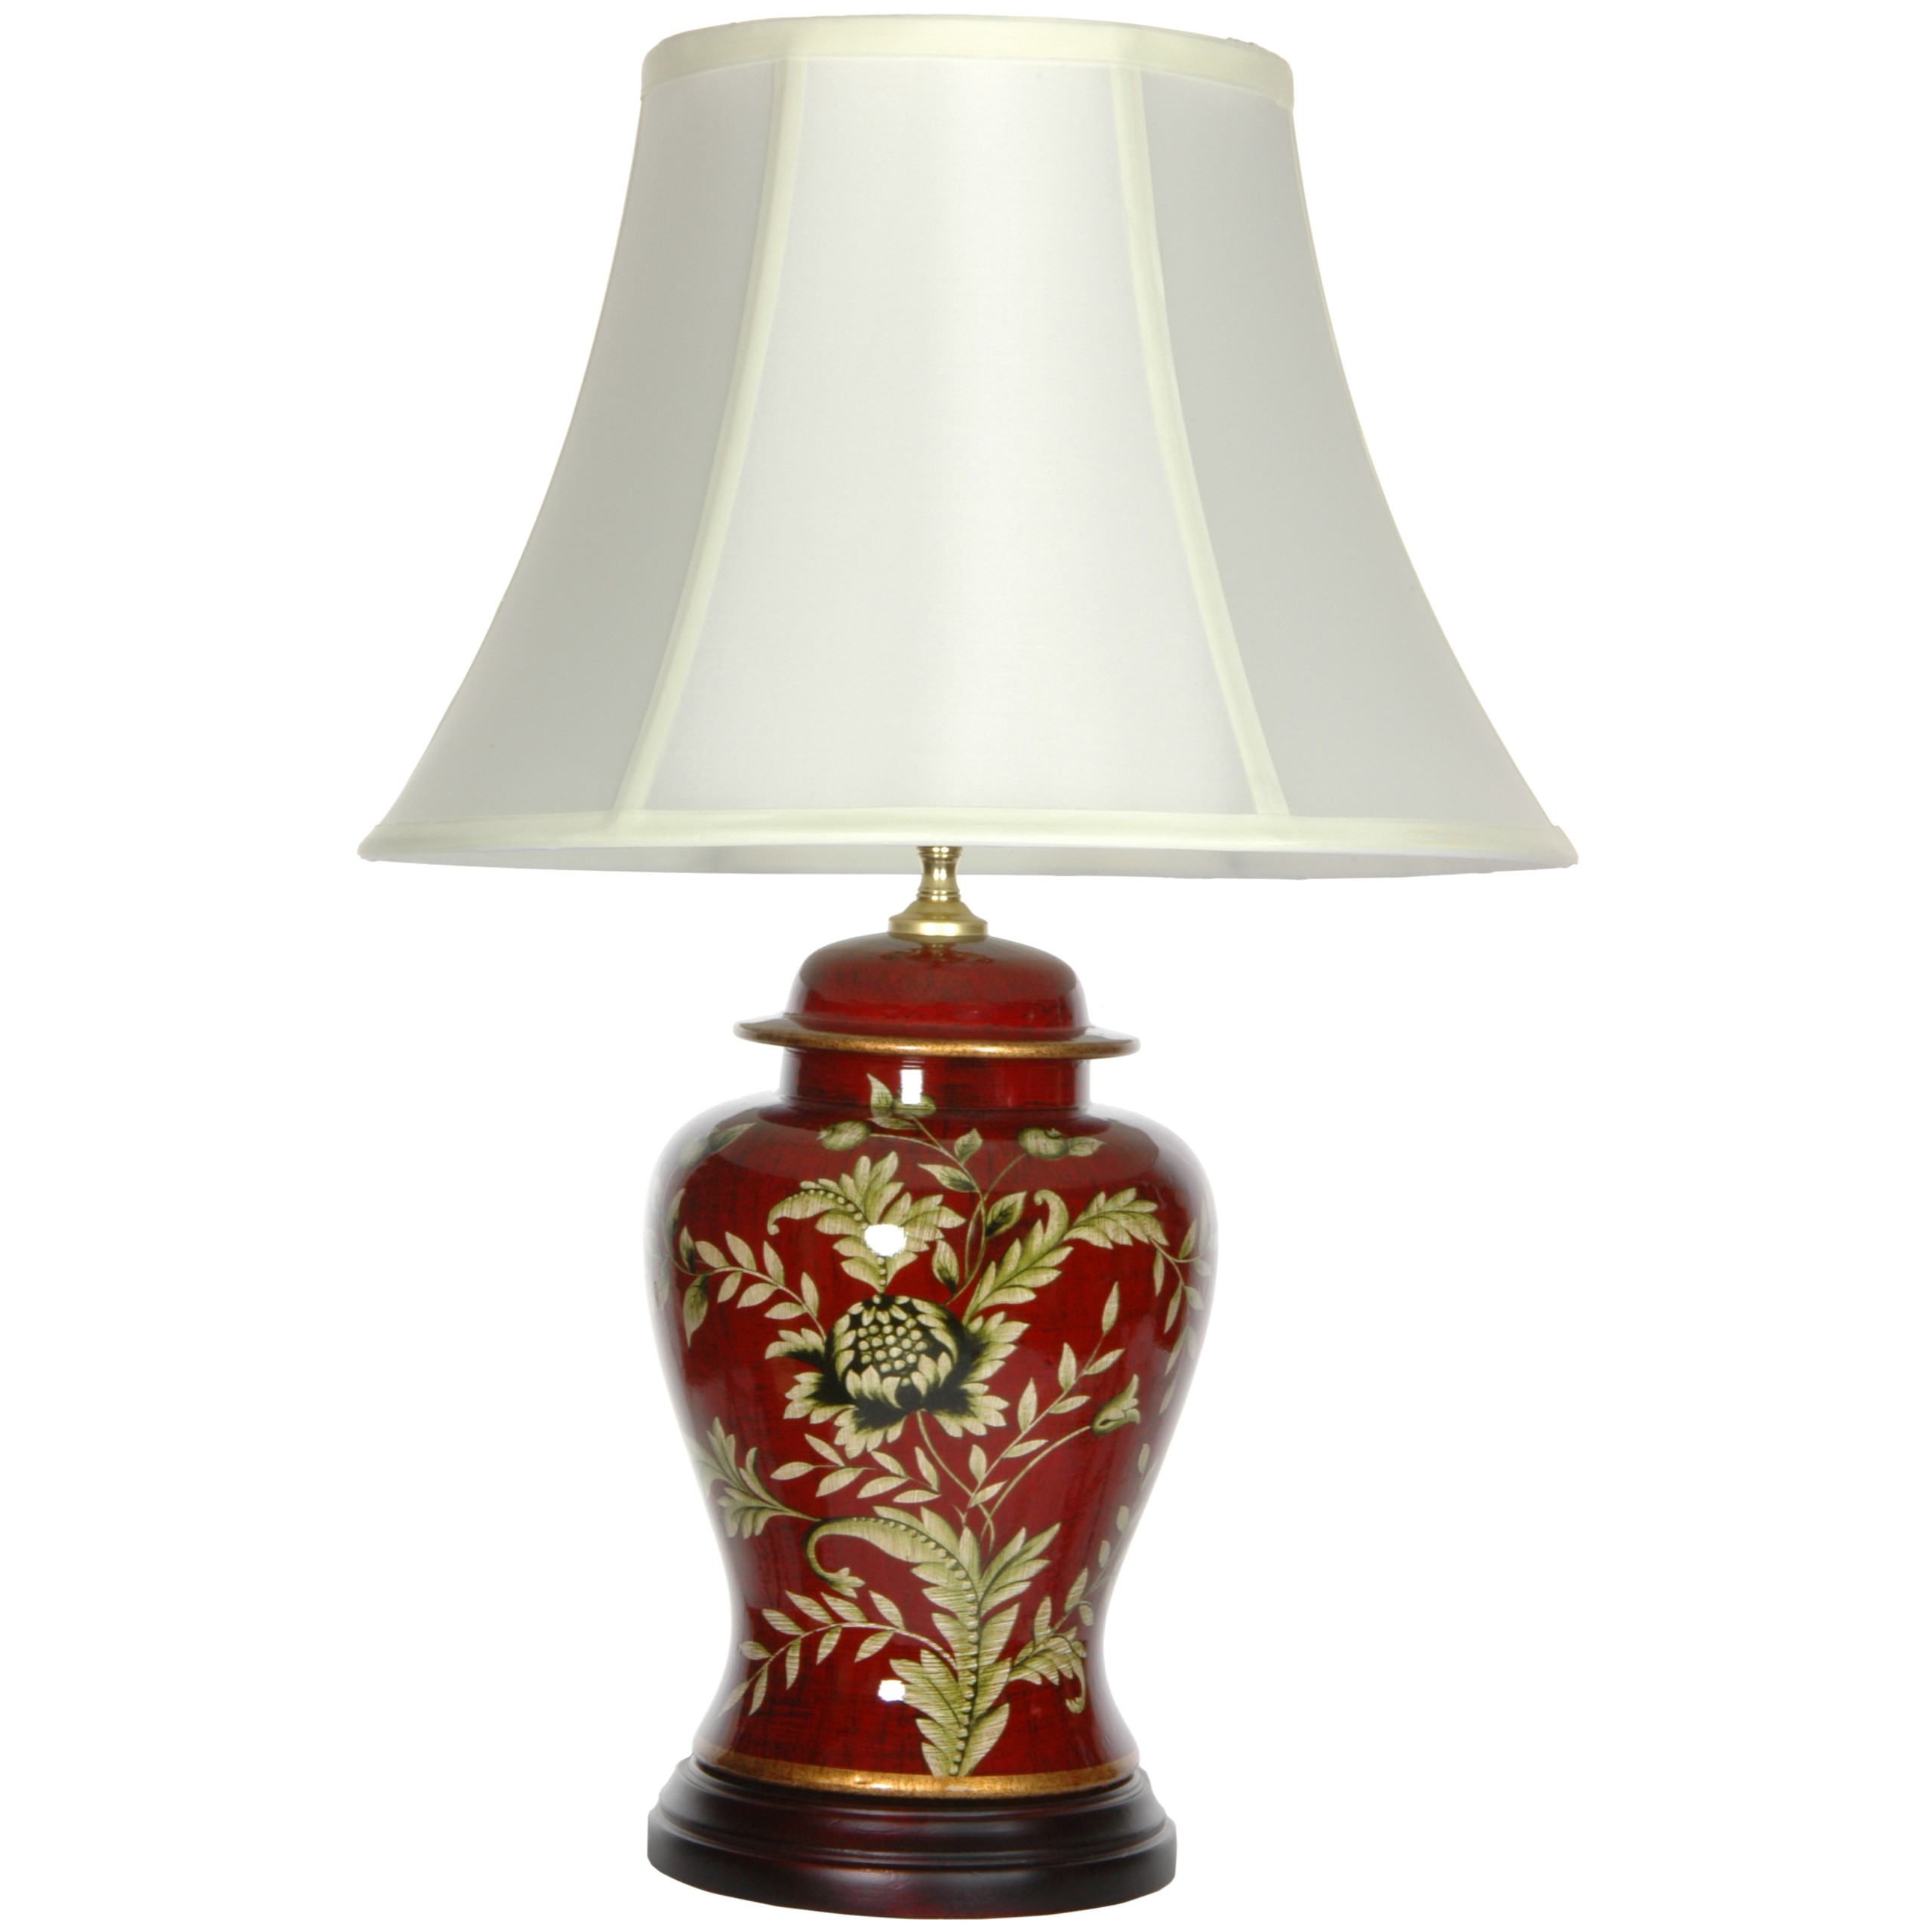 Buy 22 5 golden foliage porcelain lamp online jco x9556